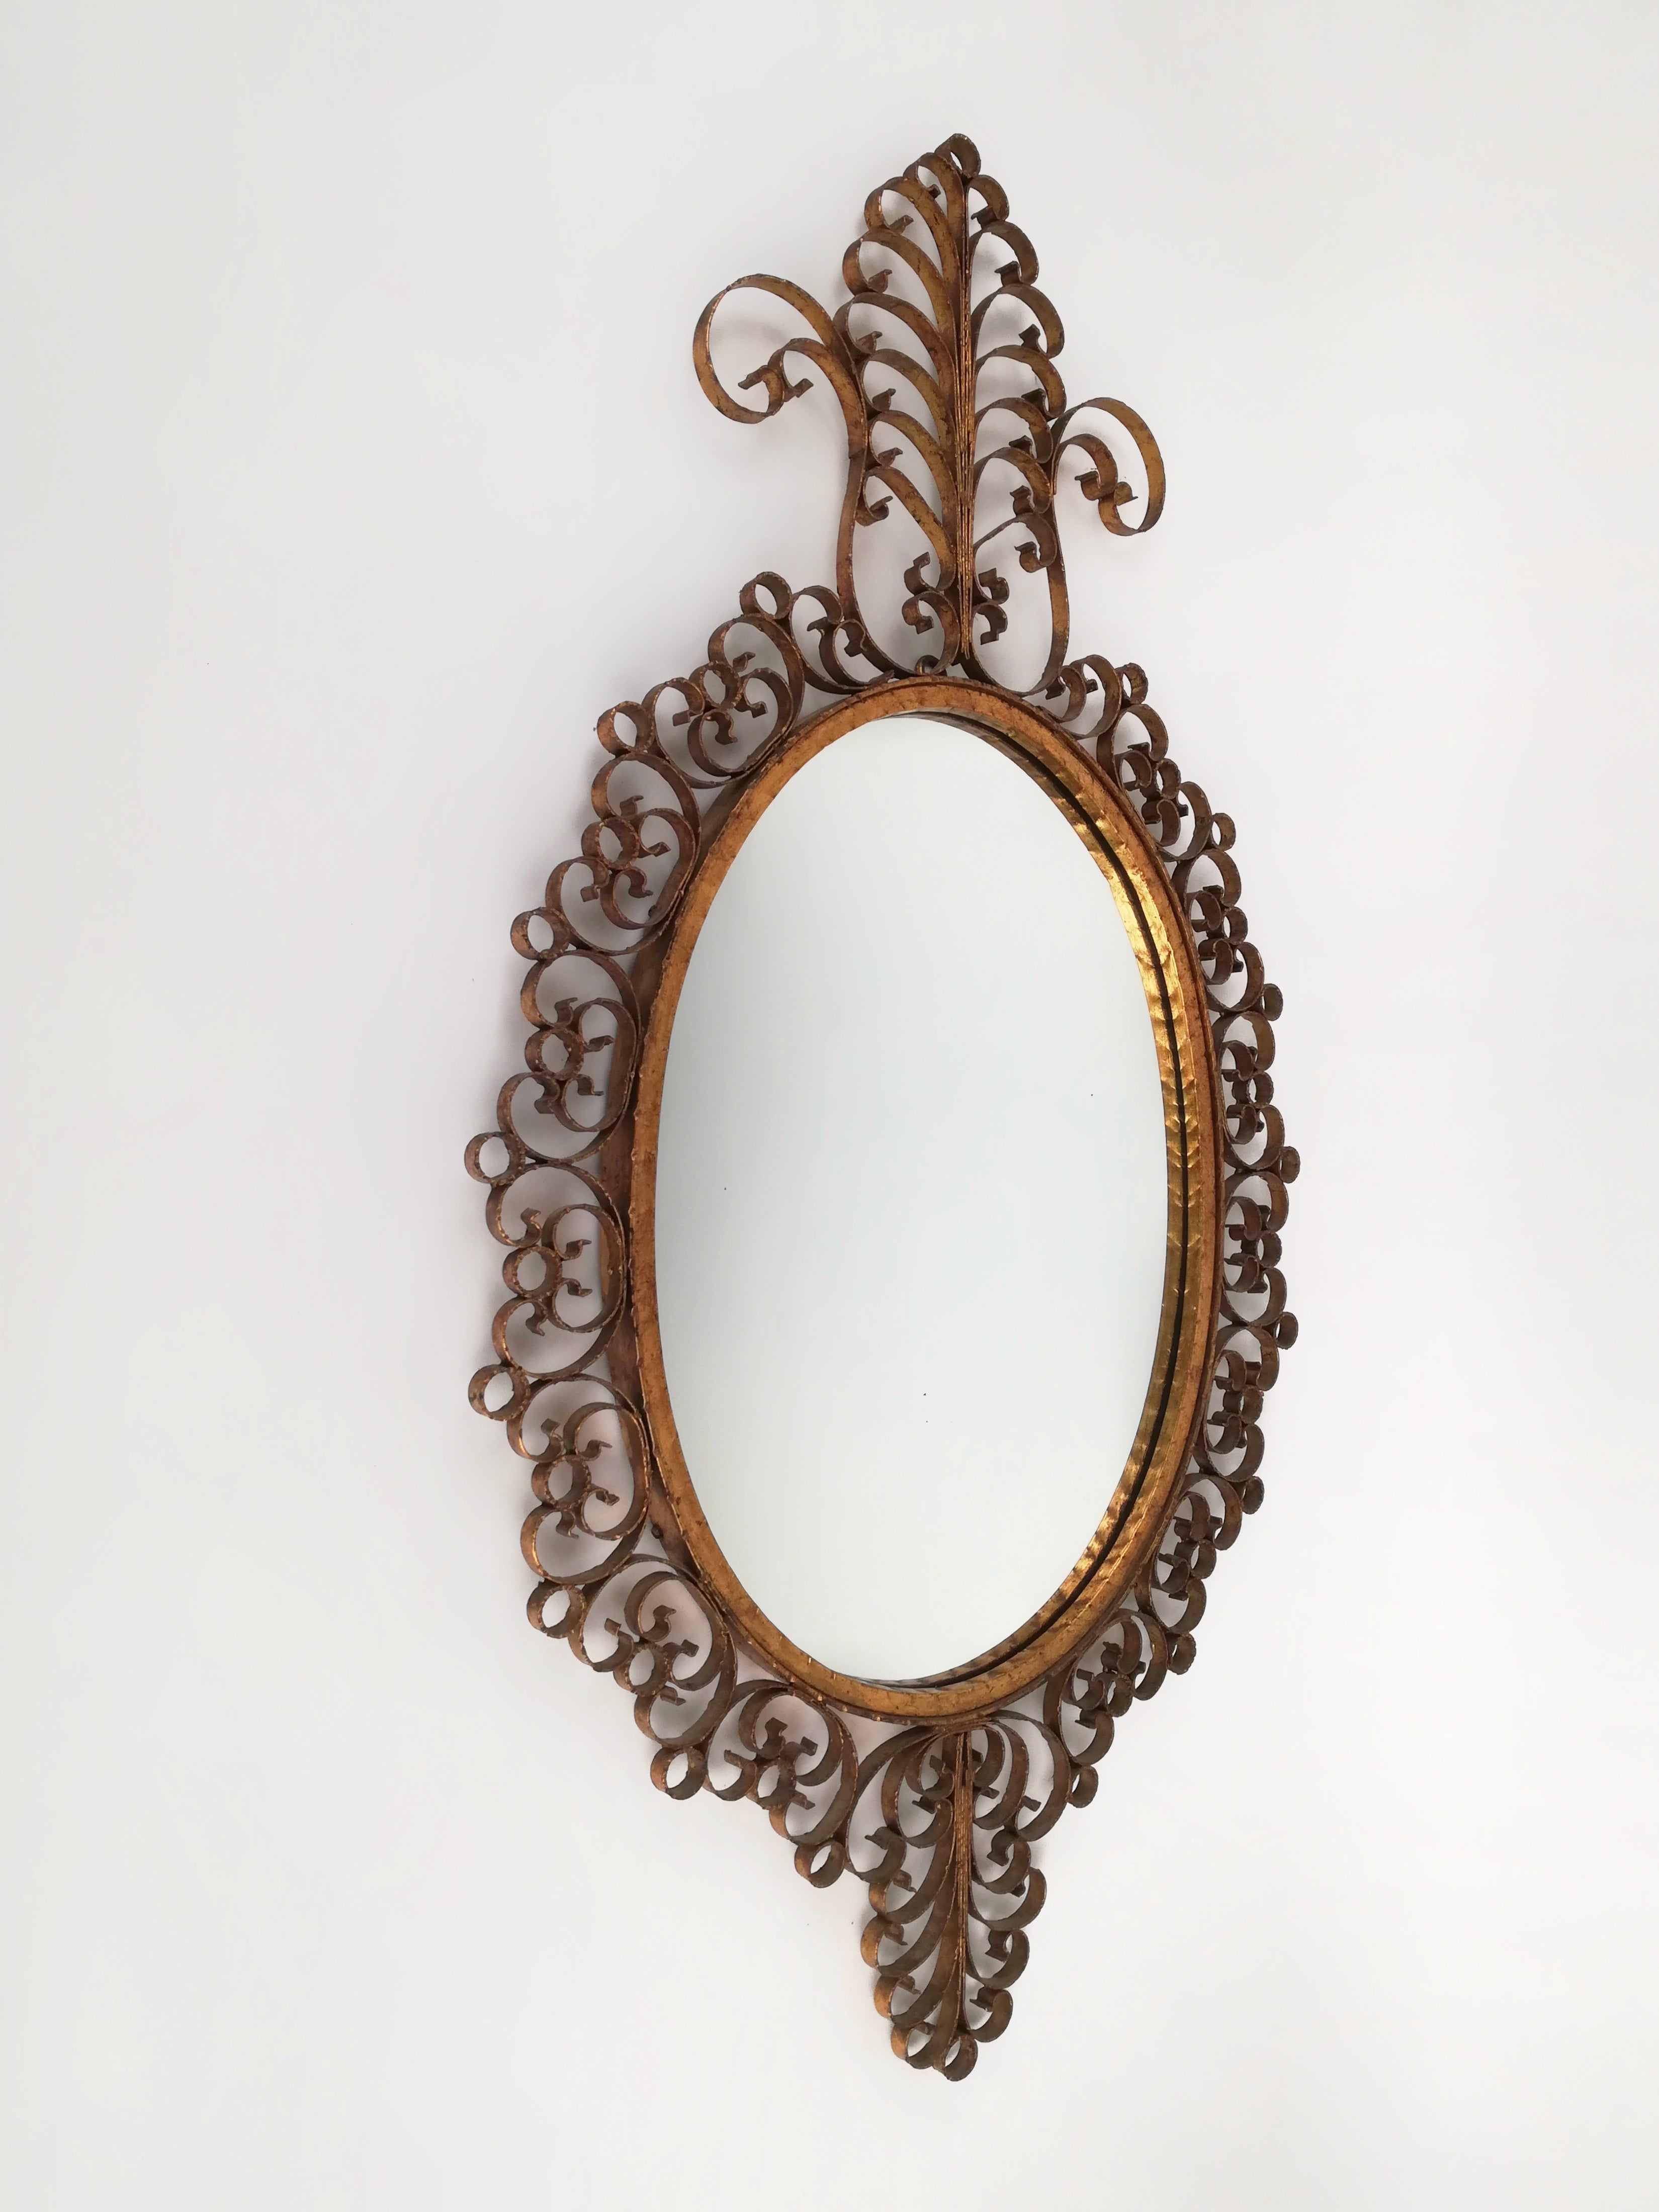 Grand miroir (Hauteur 117cm) d'inspiration baroque, fabriqué à la main en Italie dans les années 1950 dans le style des produits Pierluigi Colli.
La structure en fer forgé est décorée à la feuille d'or ; les courbes et les volutes en métal martelé